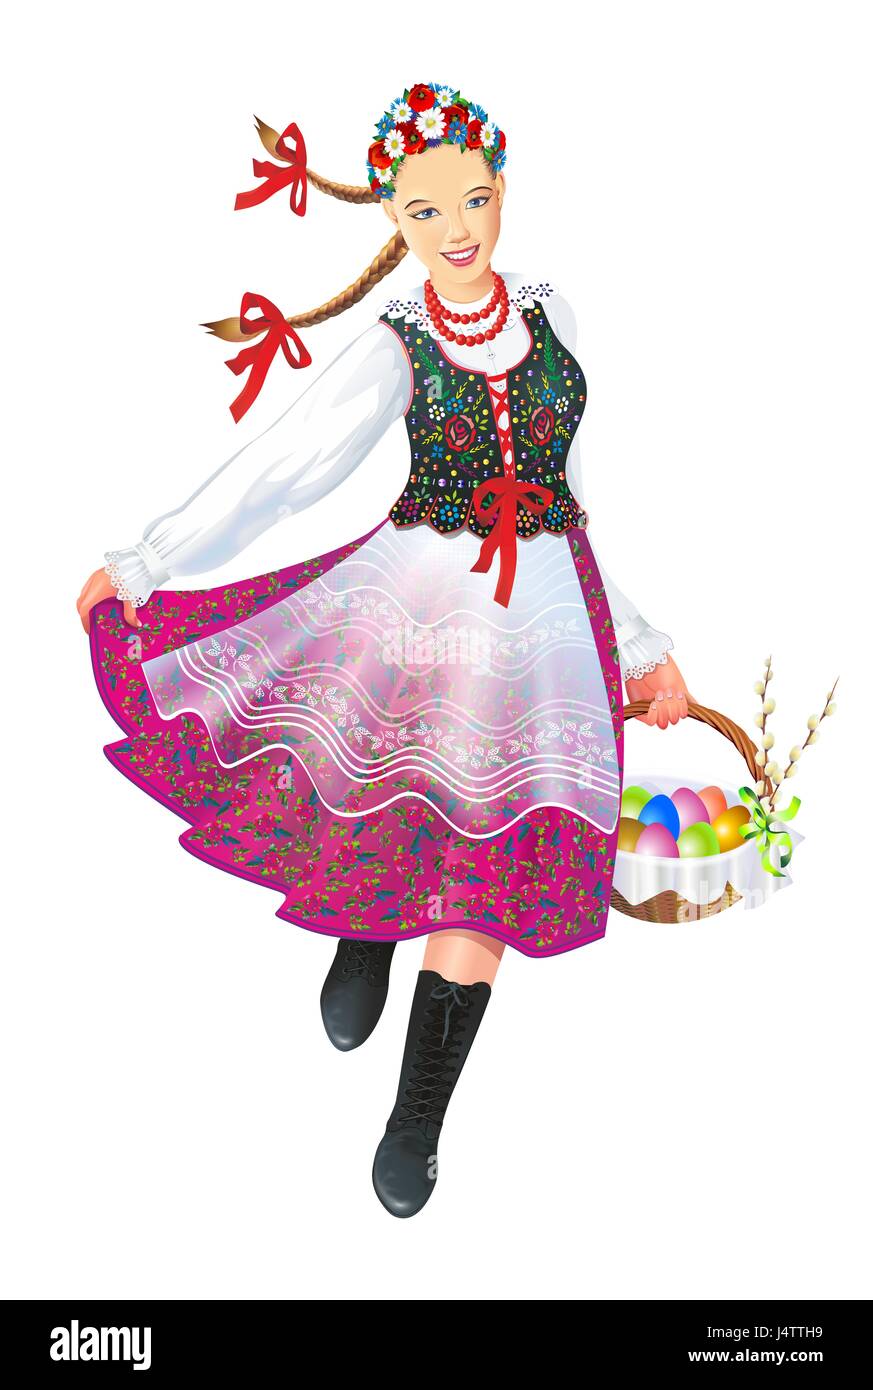 Krakowiak Folk Dancer with Easter Basket Illustration Isolated on White. Polish Subethnic Culture. Stock Photo